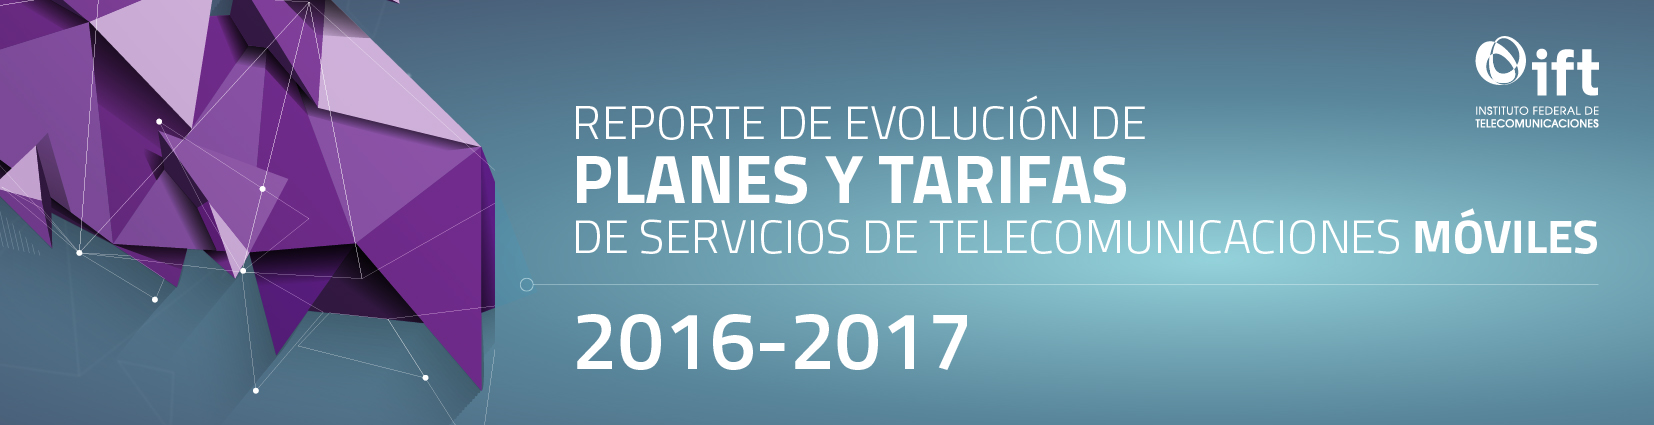 Reporte de Evolución de Planes y Tarifas de Servicios de Telecomunicaciones Móviles 2016-2017